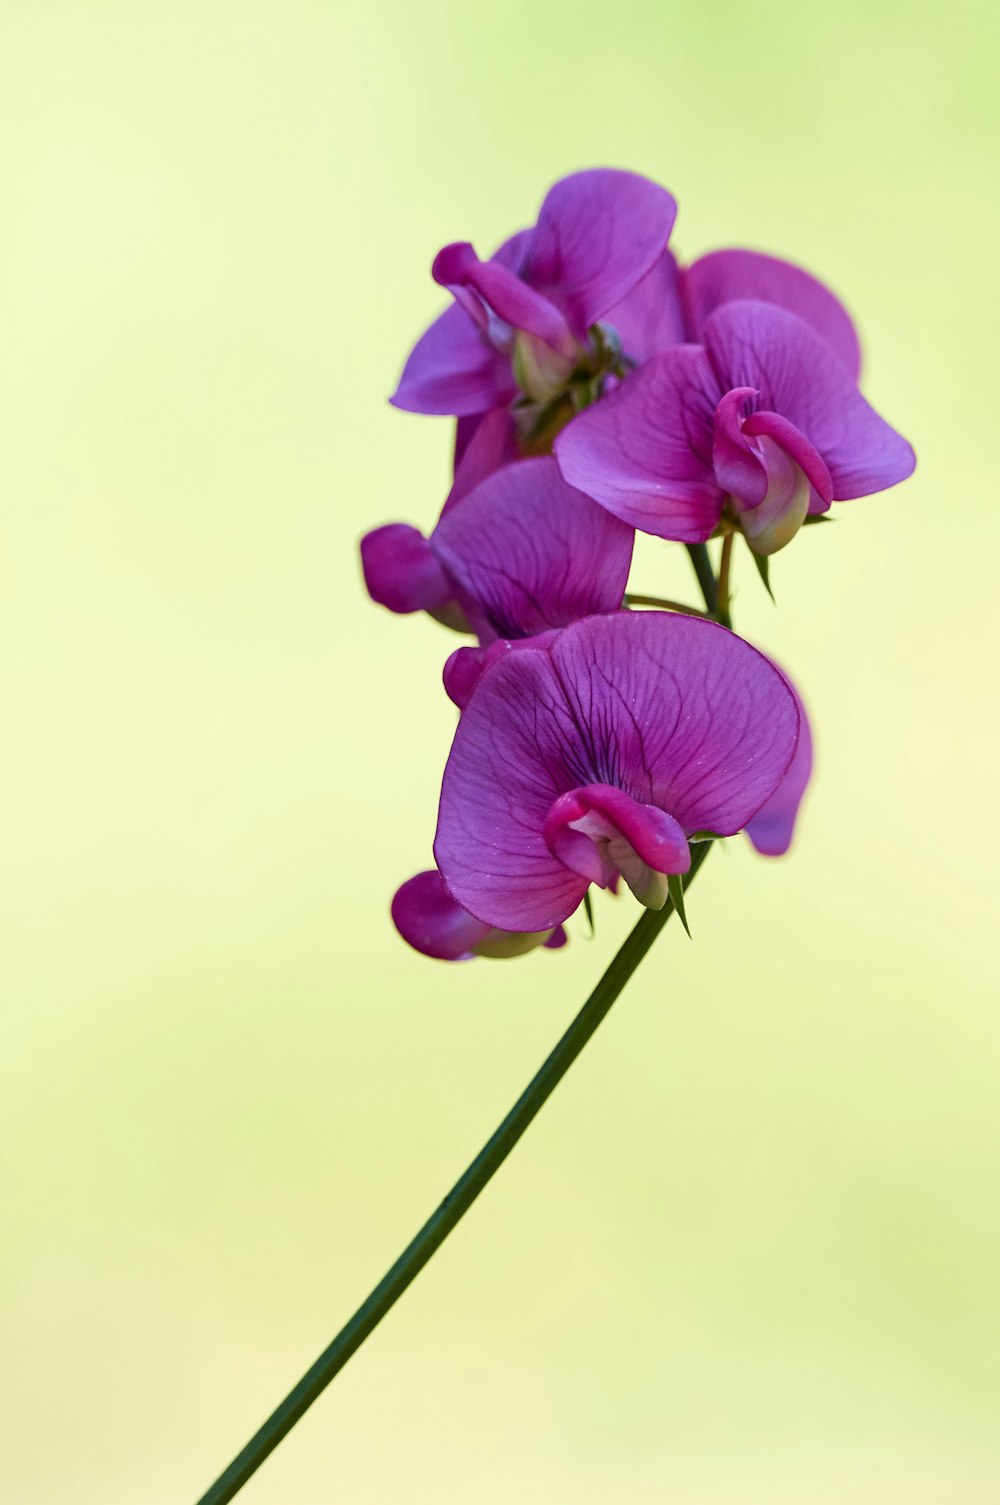 咲く紫色の蛾の蘭、クローズアップ写真